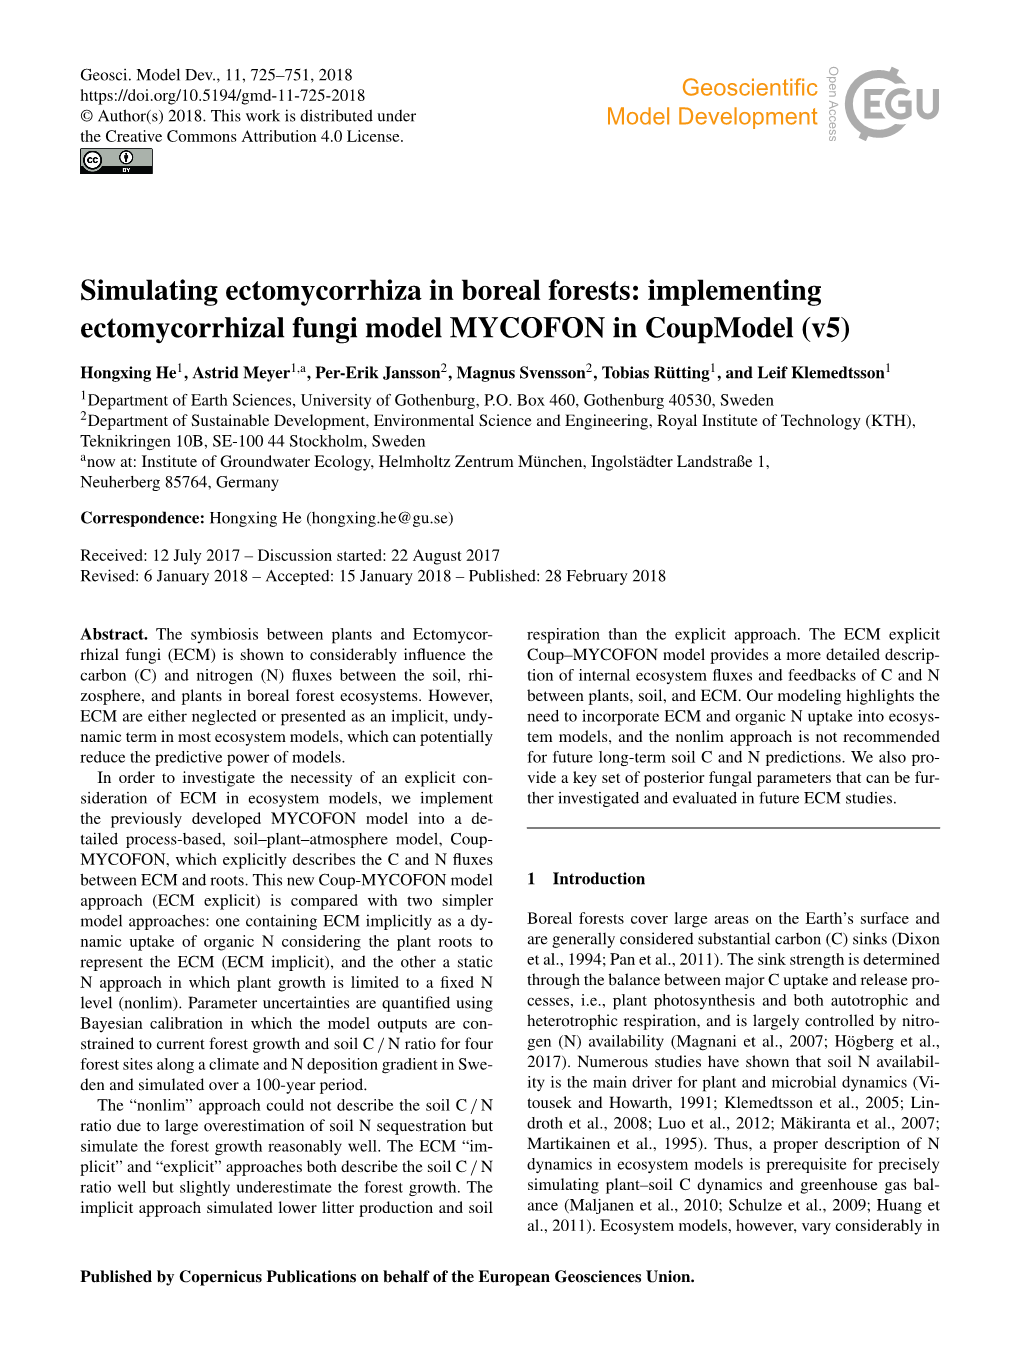 Simulating Ectomycorrhiza in Boreal Forests: Implementing Ectomycorrhizal Fungi Model MYCOFON in Coupmodel (V5)